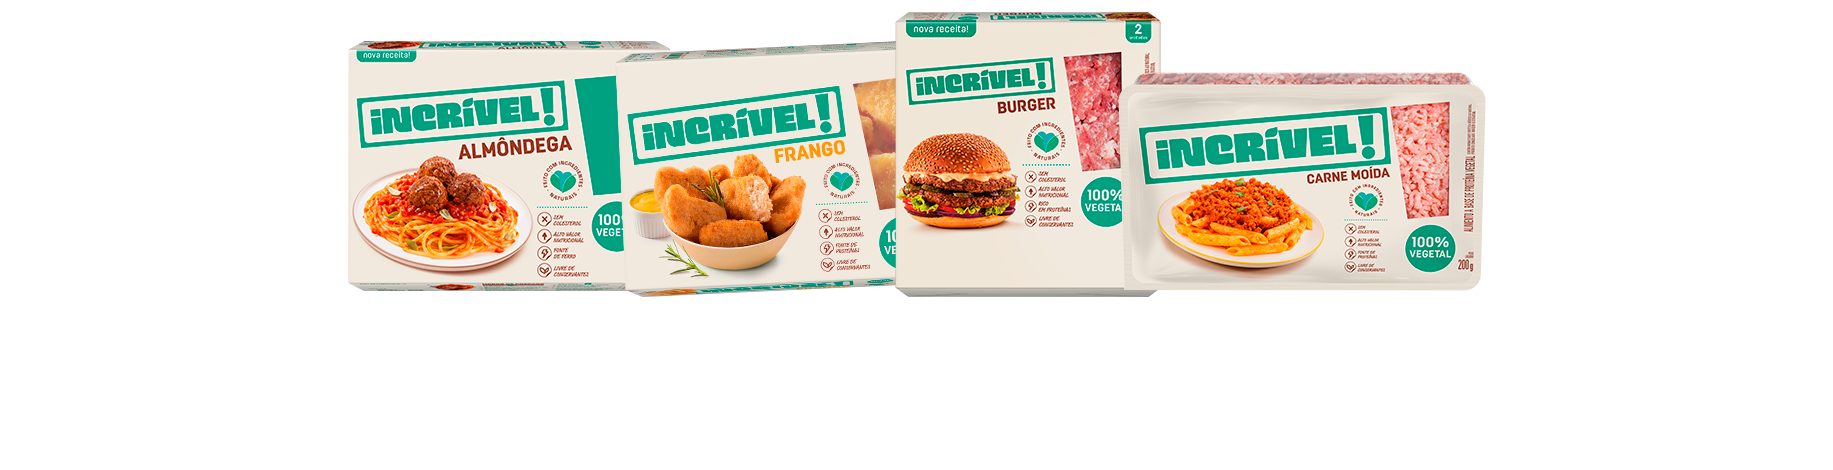 quatro embalagens de alimentos da marca Incrivel